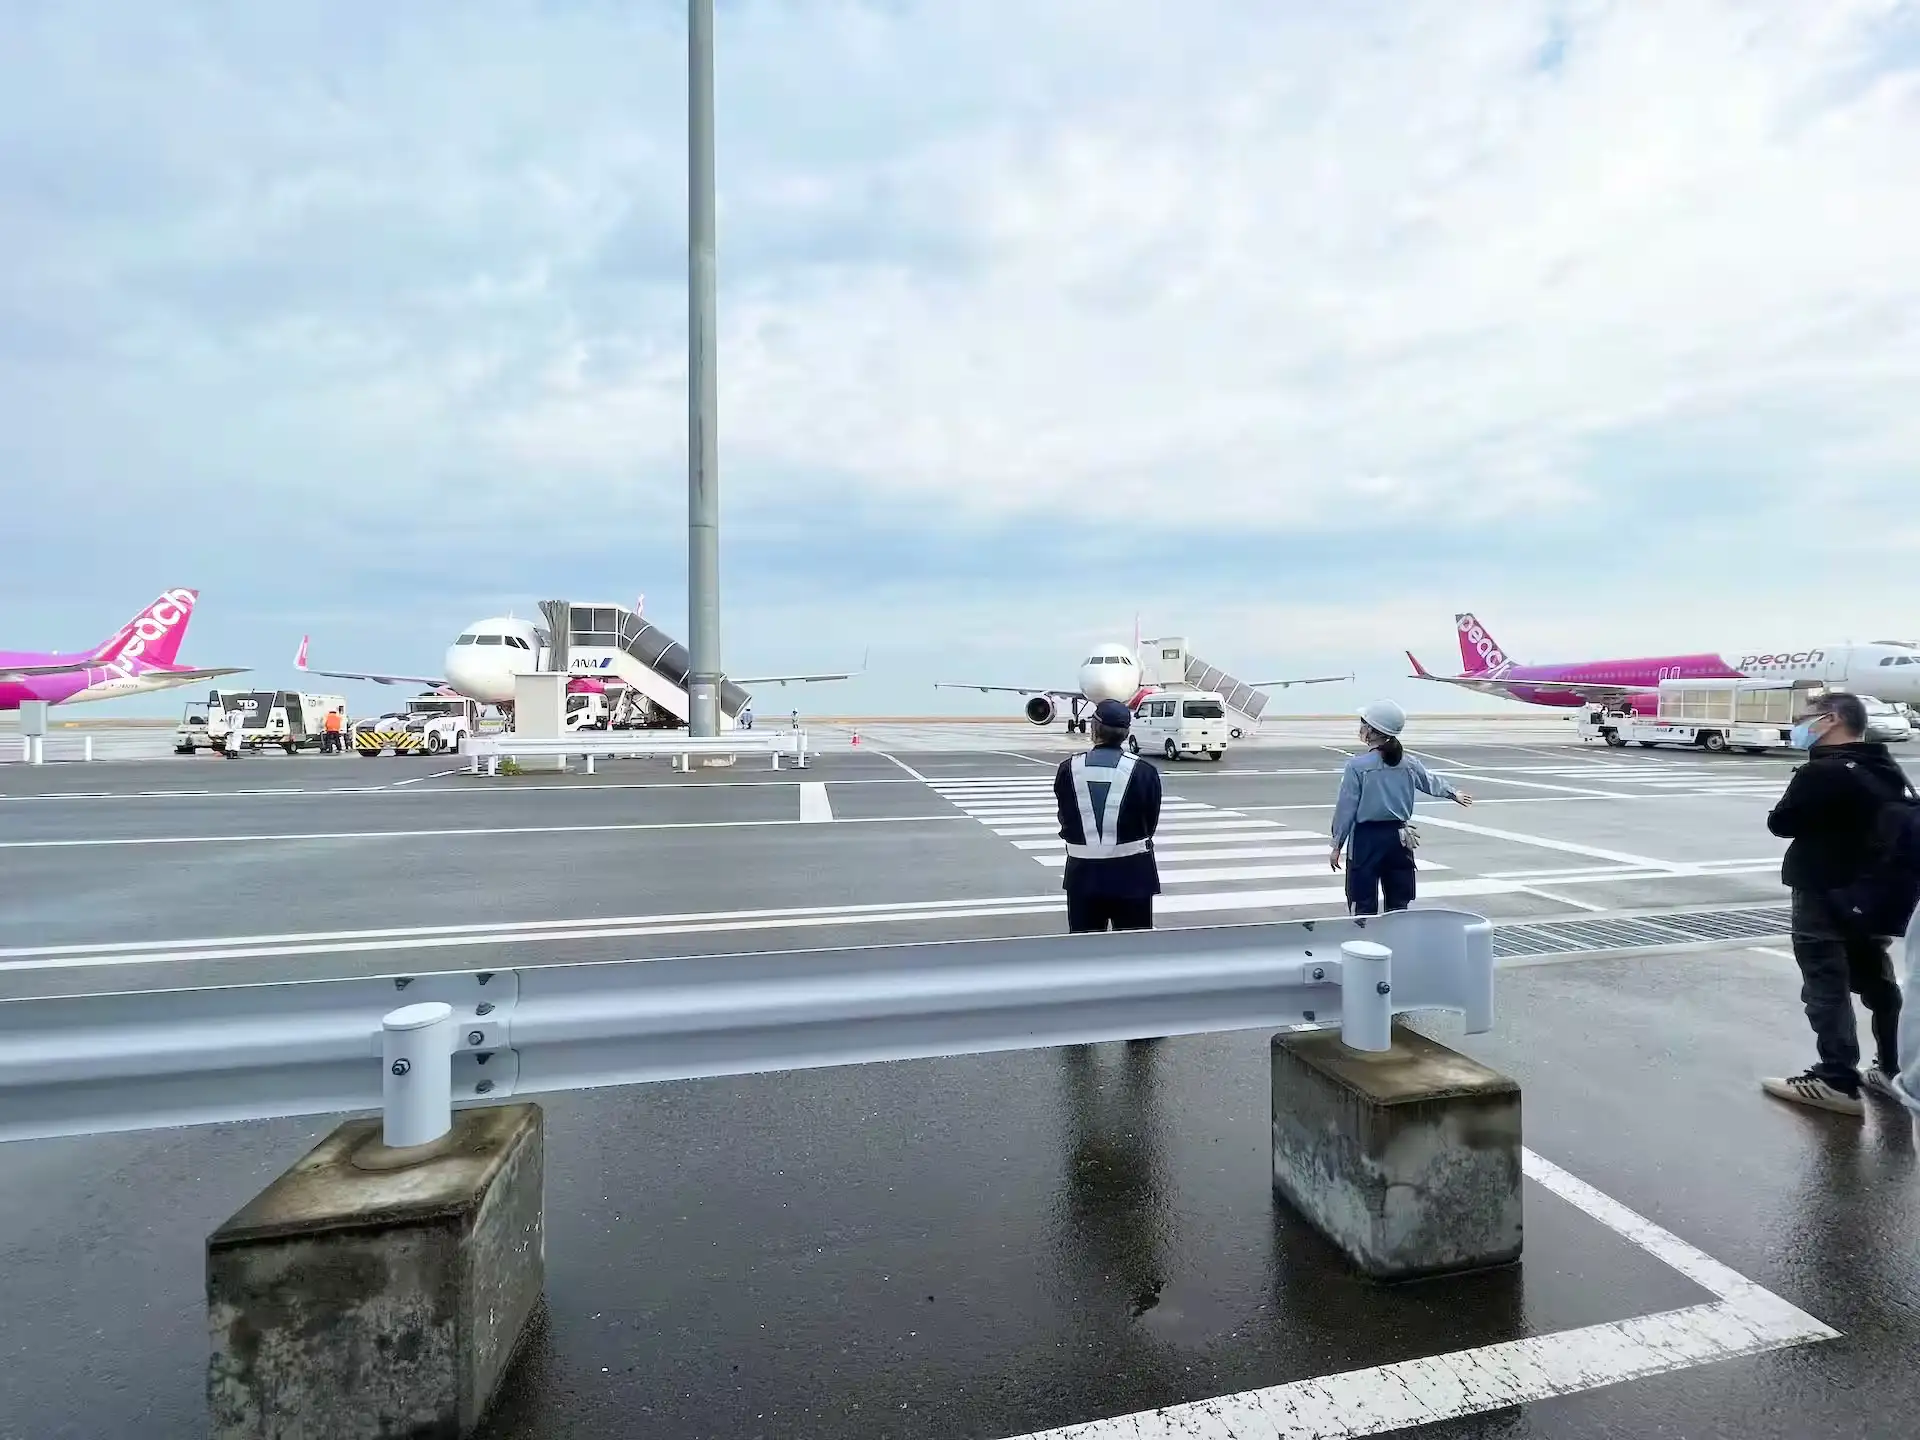 関西空港の滑走路に停まっているピーチアビエーションの機体とゲートを結ぶ通路で待機している様子